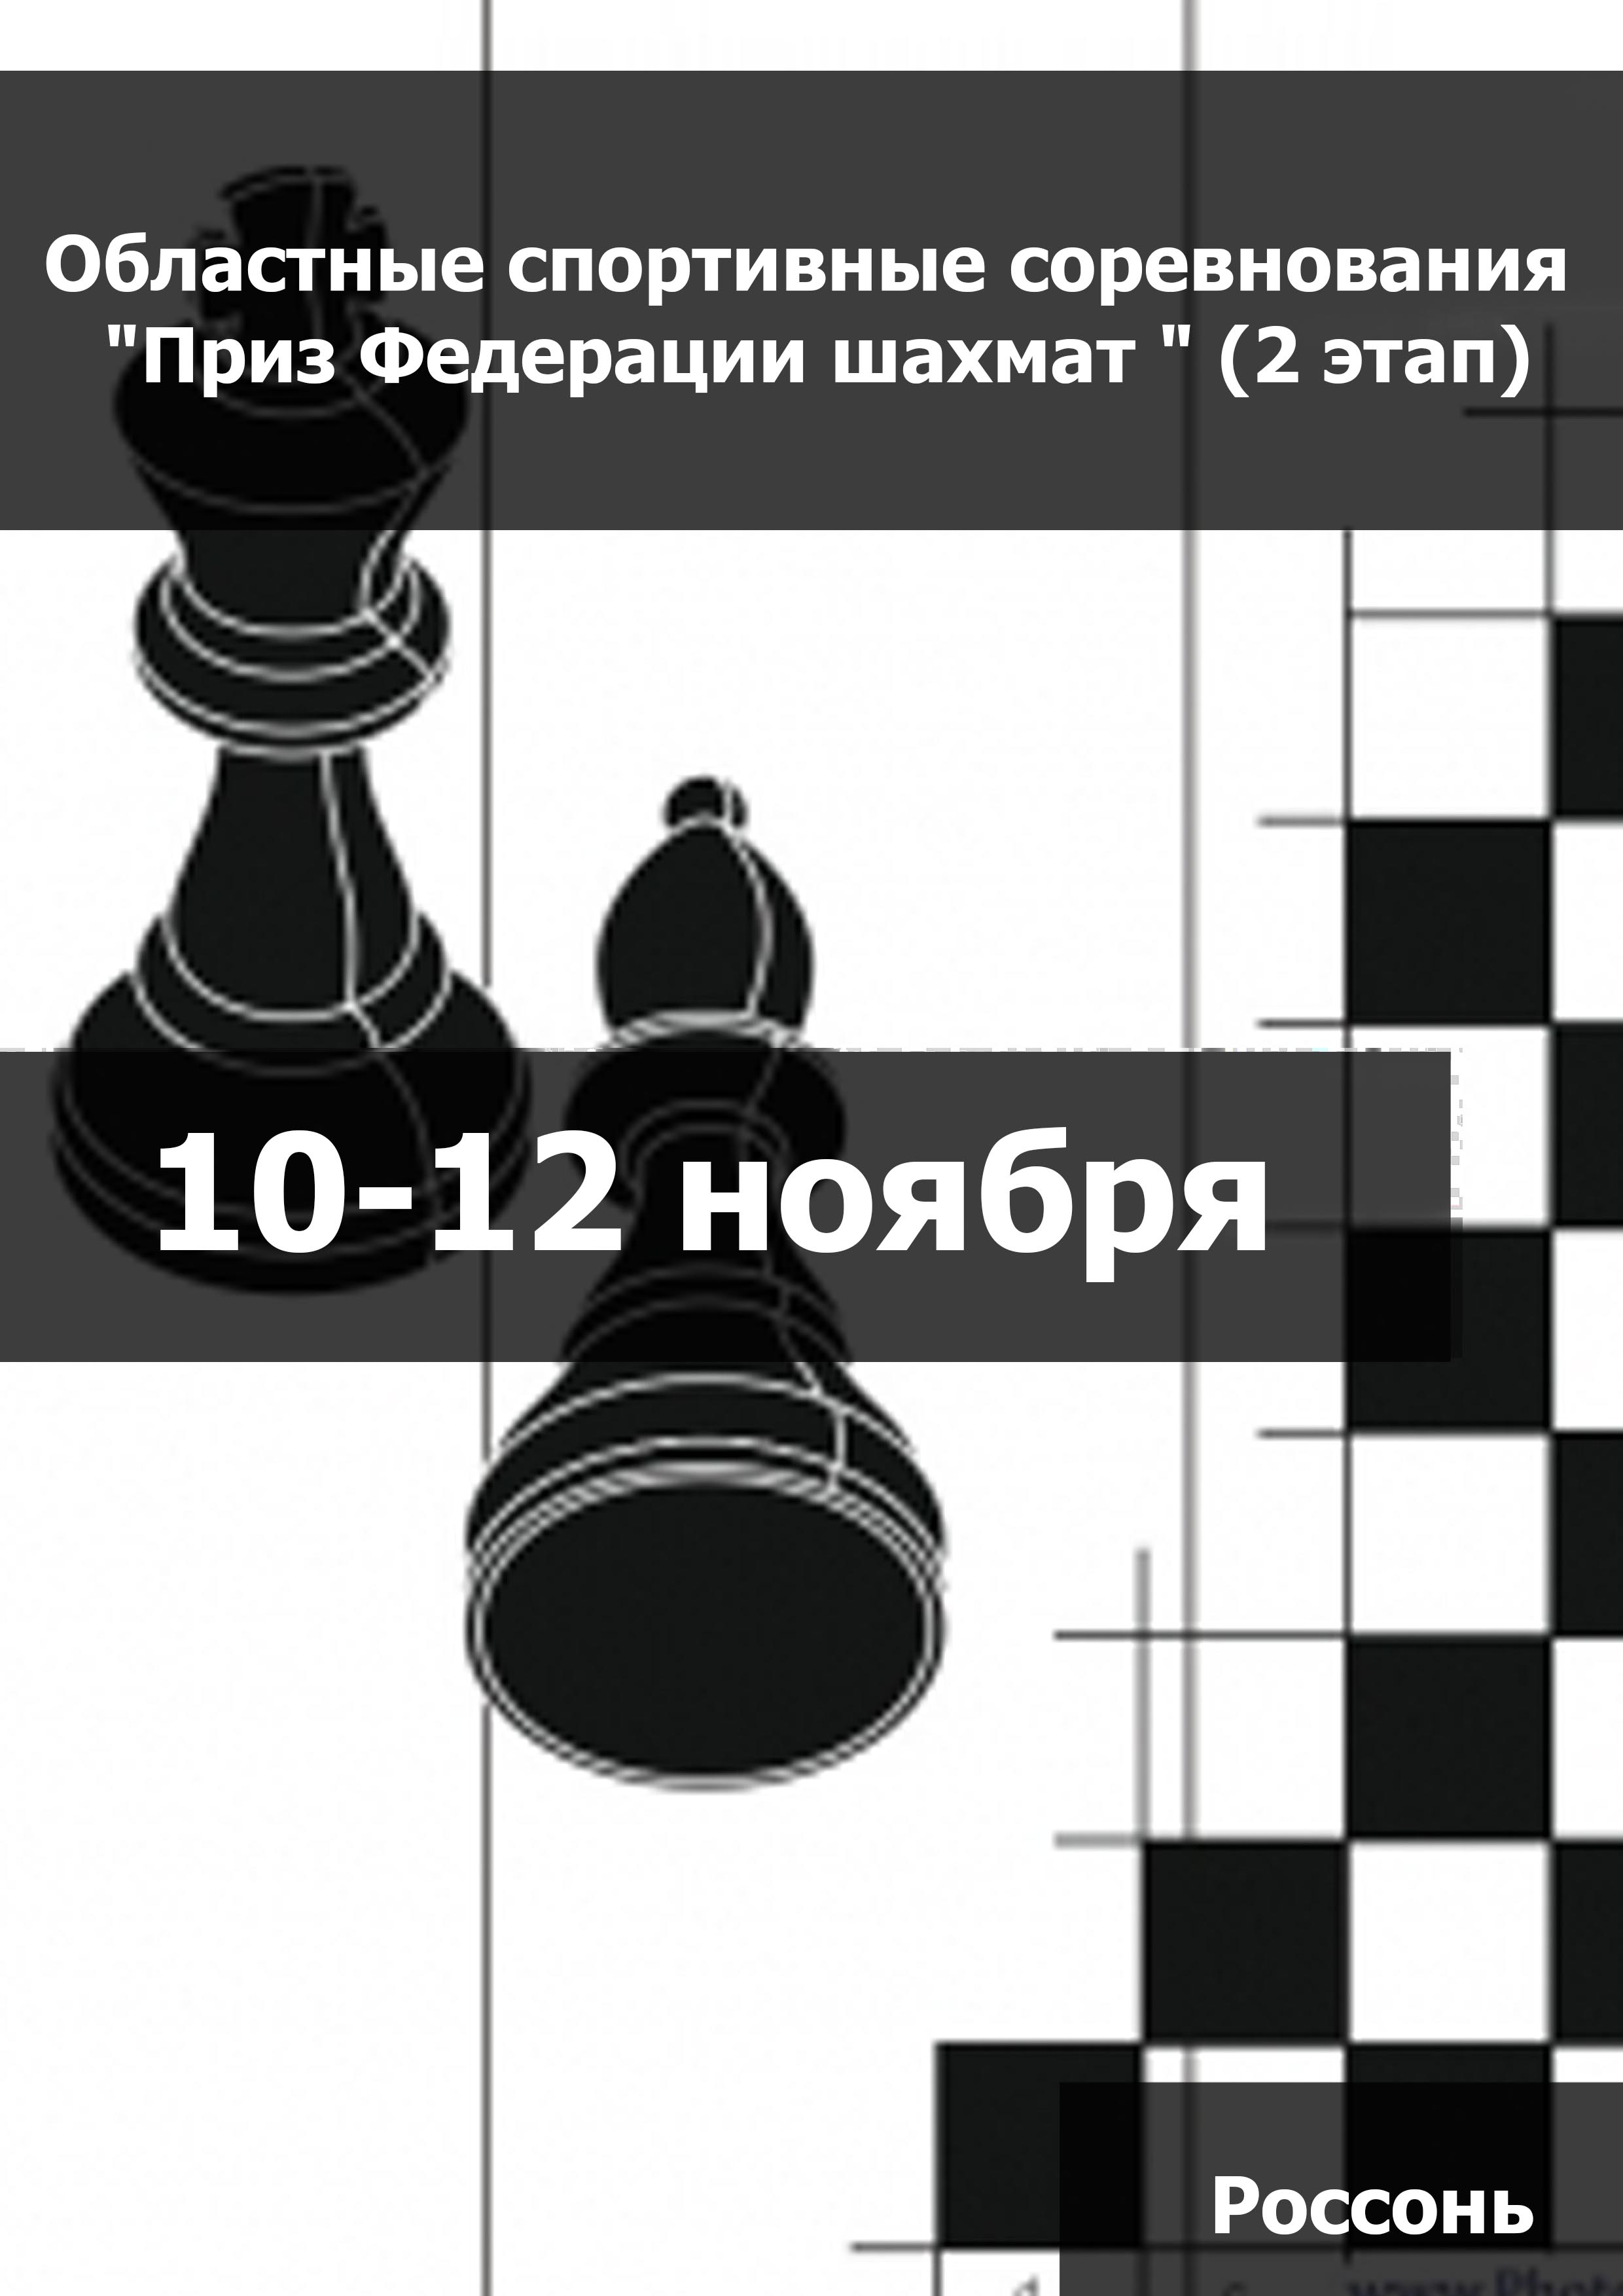 Областные спортивные соревнования "Приз Федерации шахмат " (2 этап) (мальчики, девочки до 11 лет) 10  ноябр
 2023  соли
 